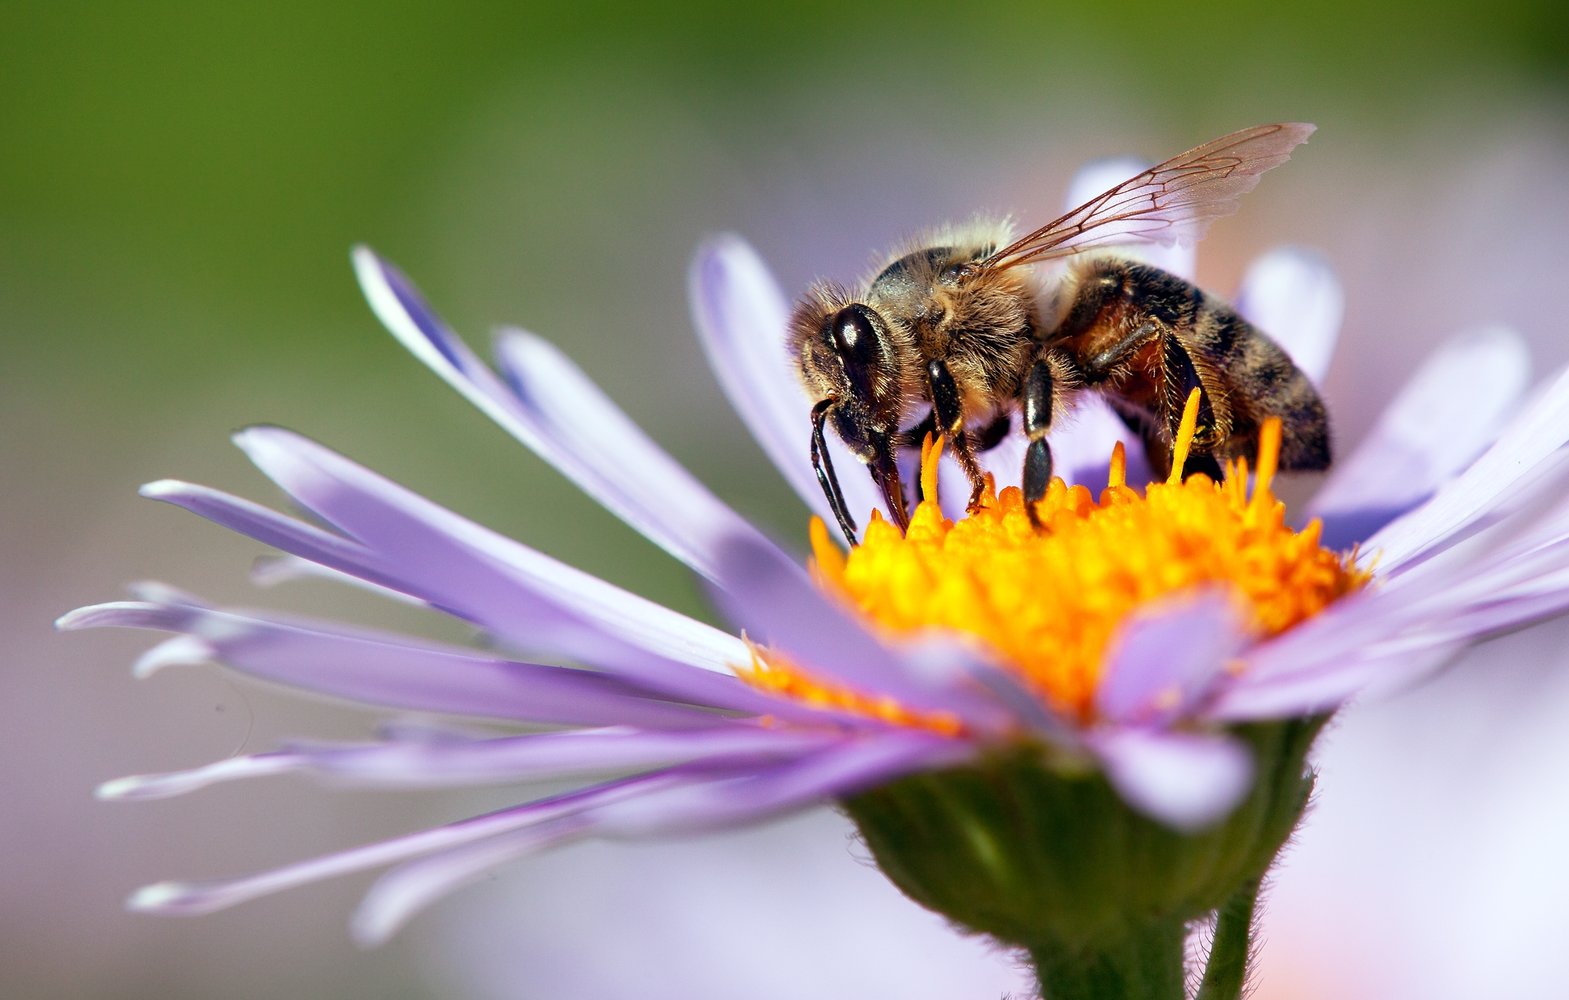 Rövidlátás kezelése méhészeti tinktúrával - Rhinitis kezelése